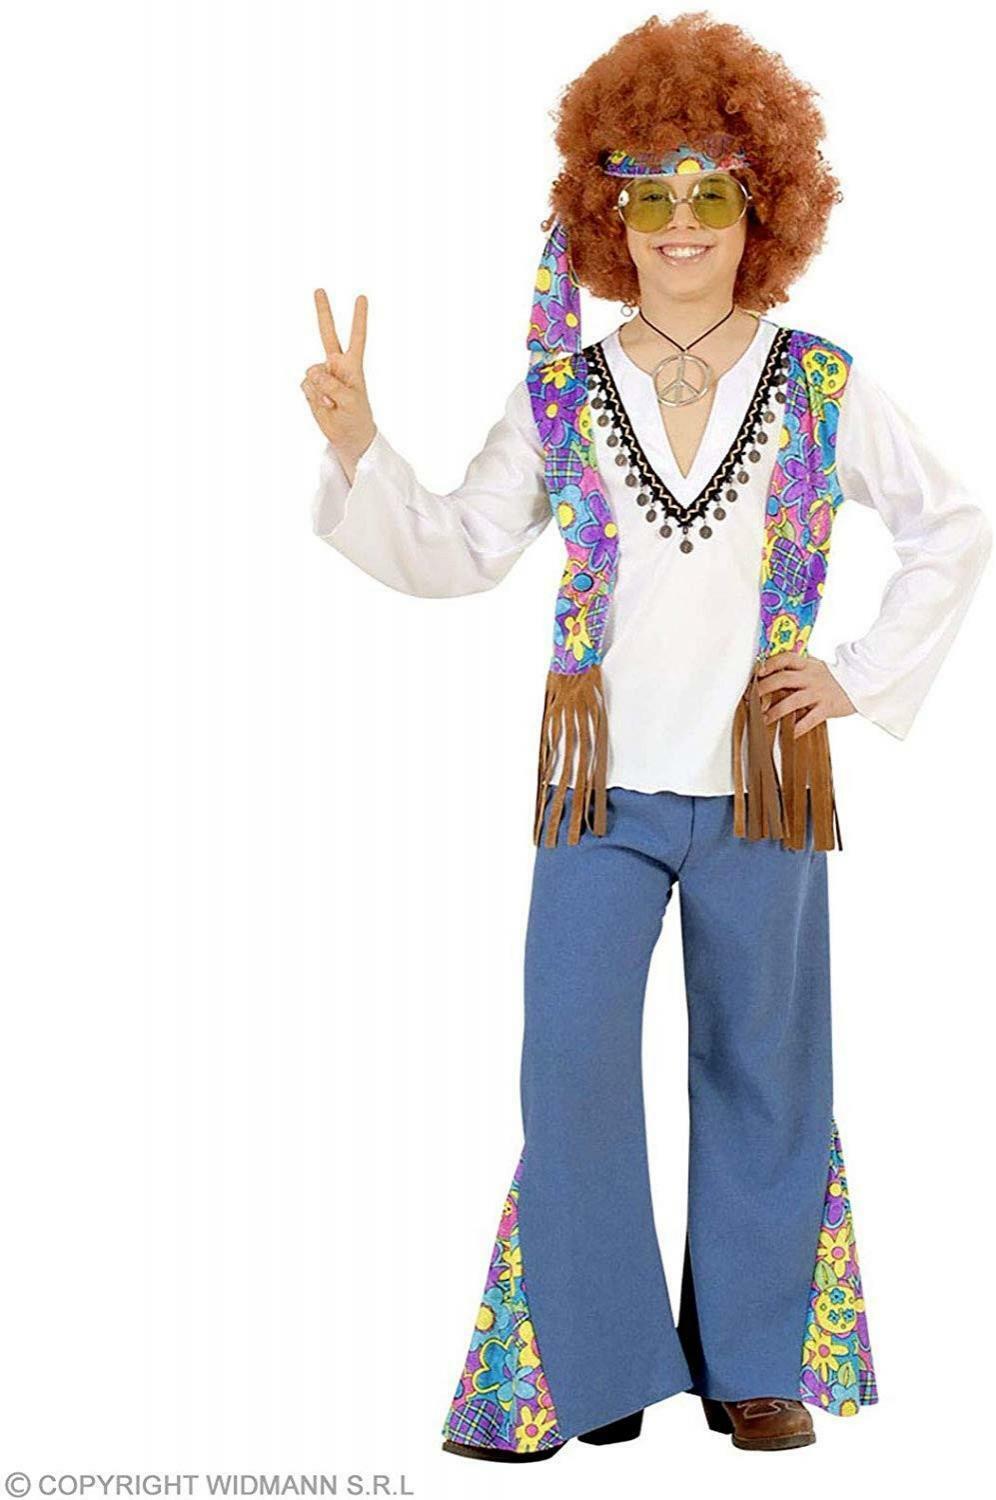 widmann costume woodstock hippie taglia 8/10 anni